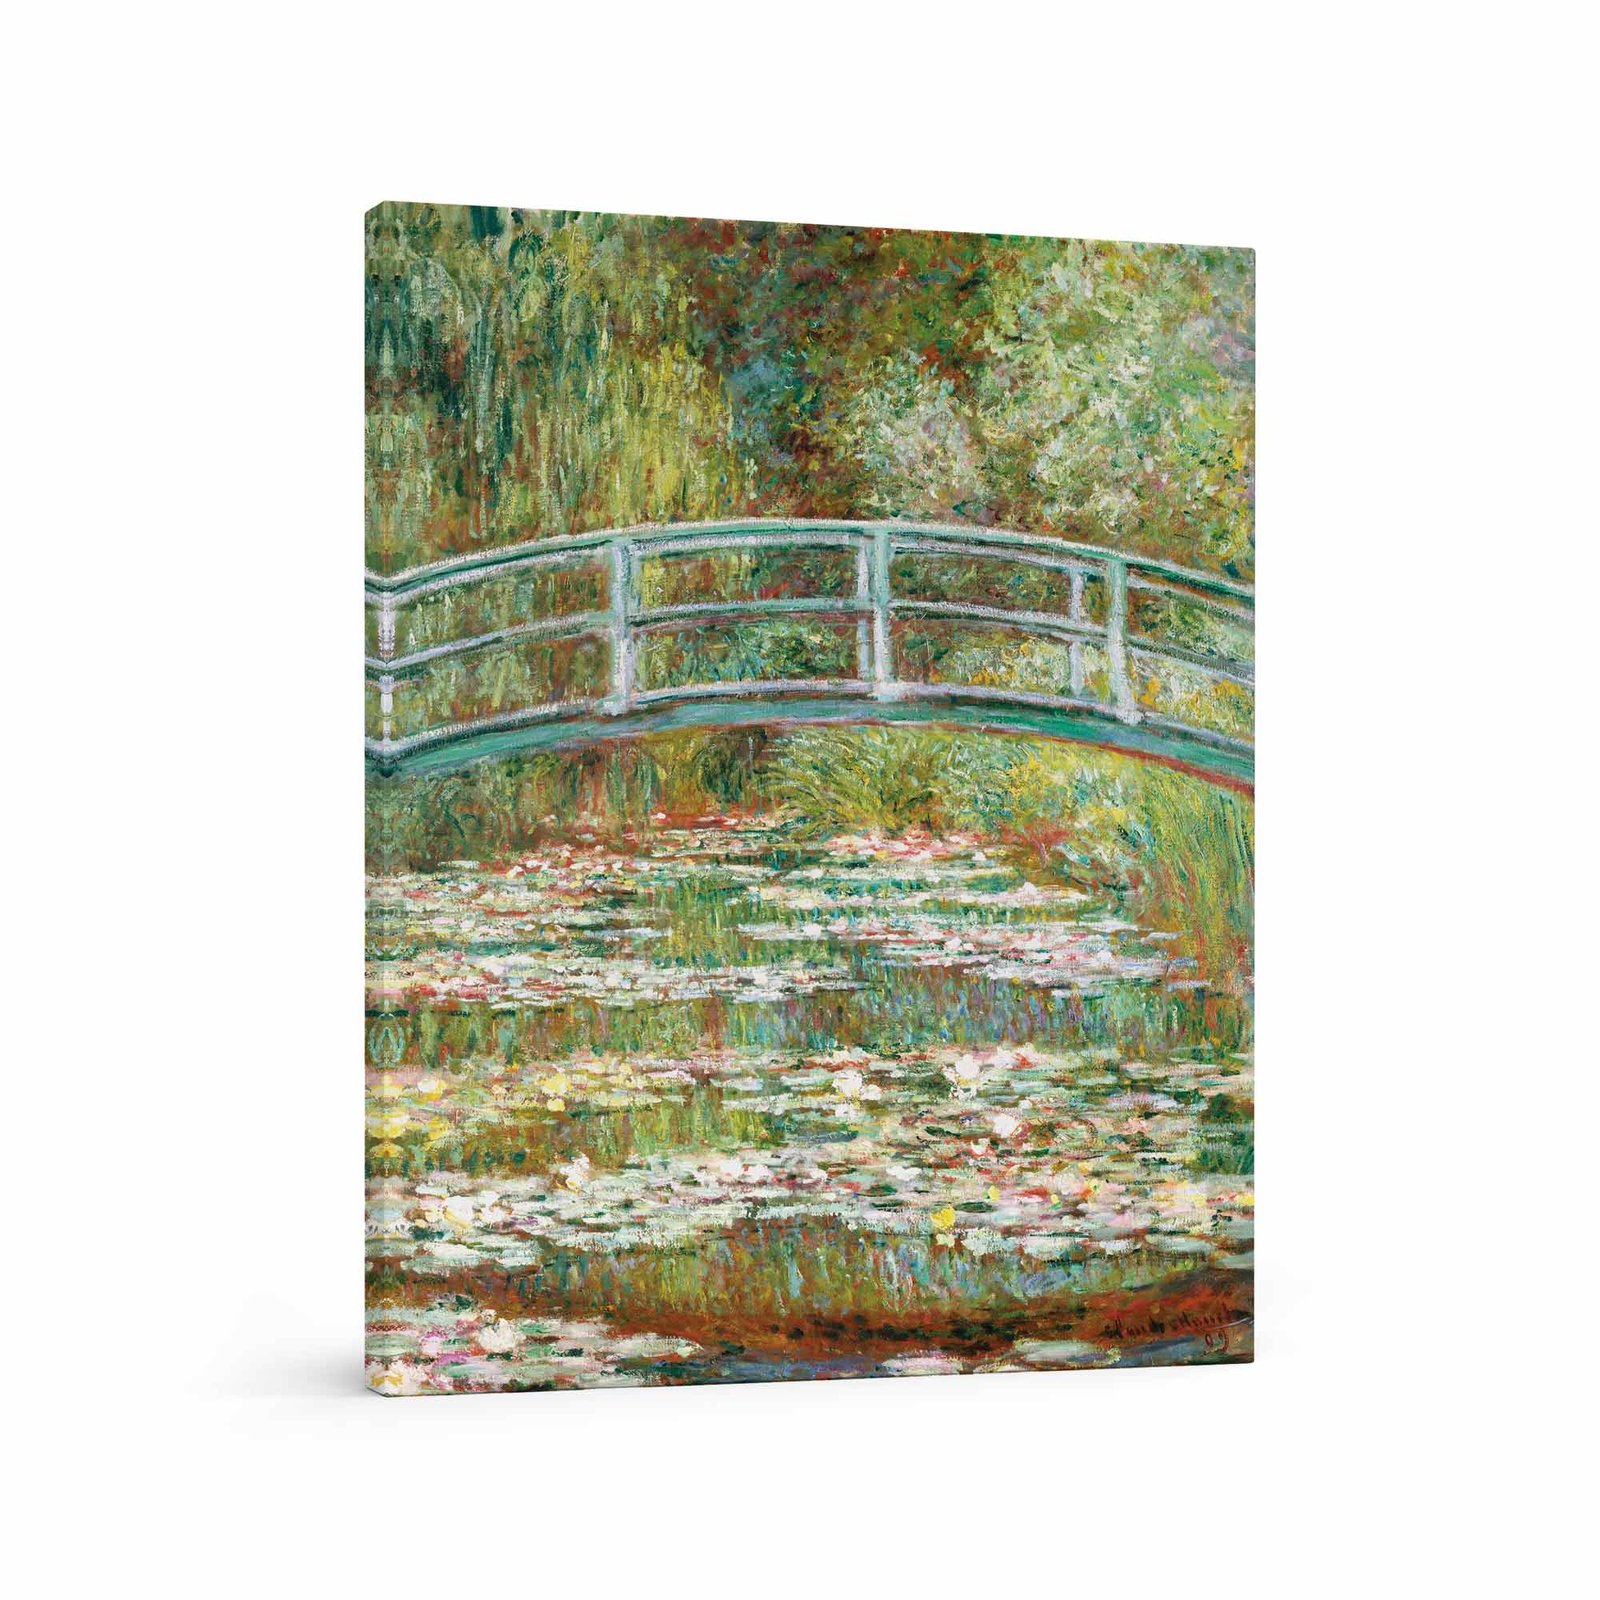 156 gamtos paveikslas - Tiltas virš vandens lelijų tvenkinio - Klodas Monė